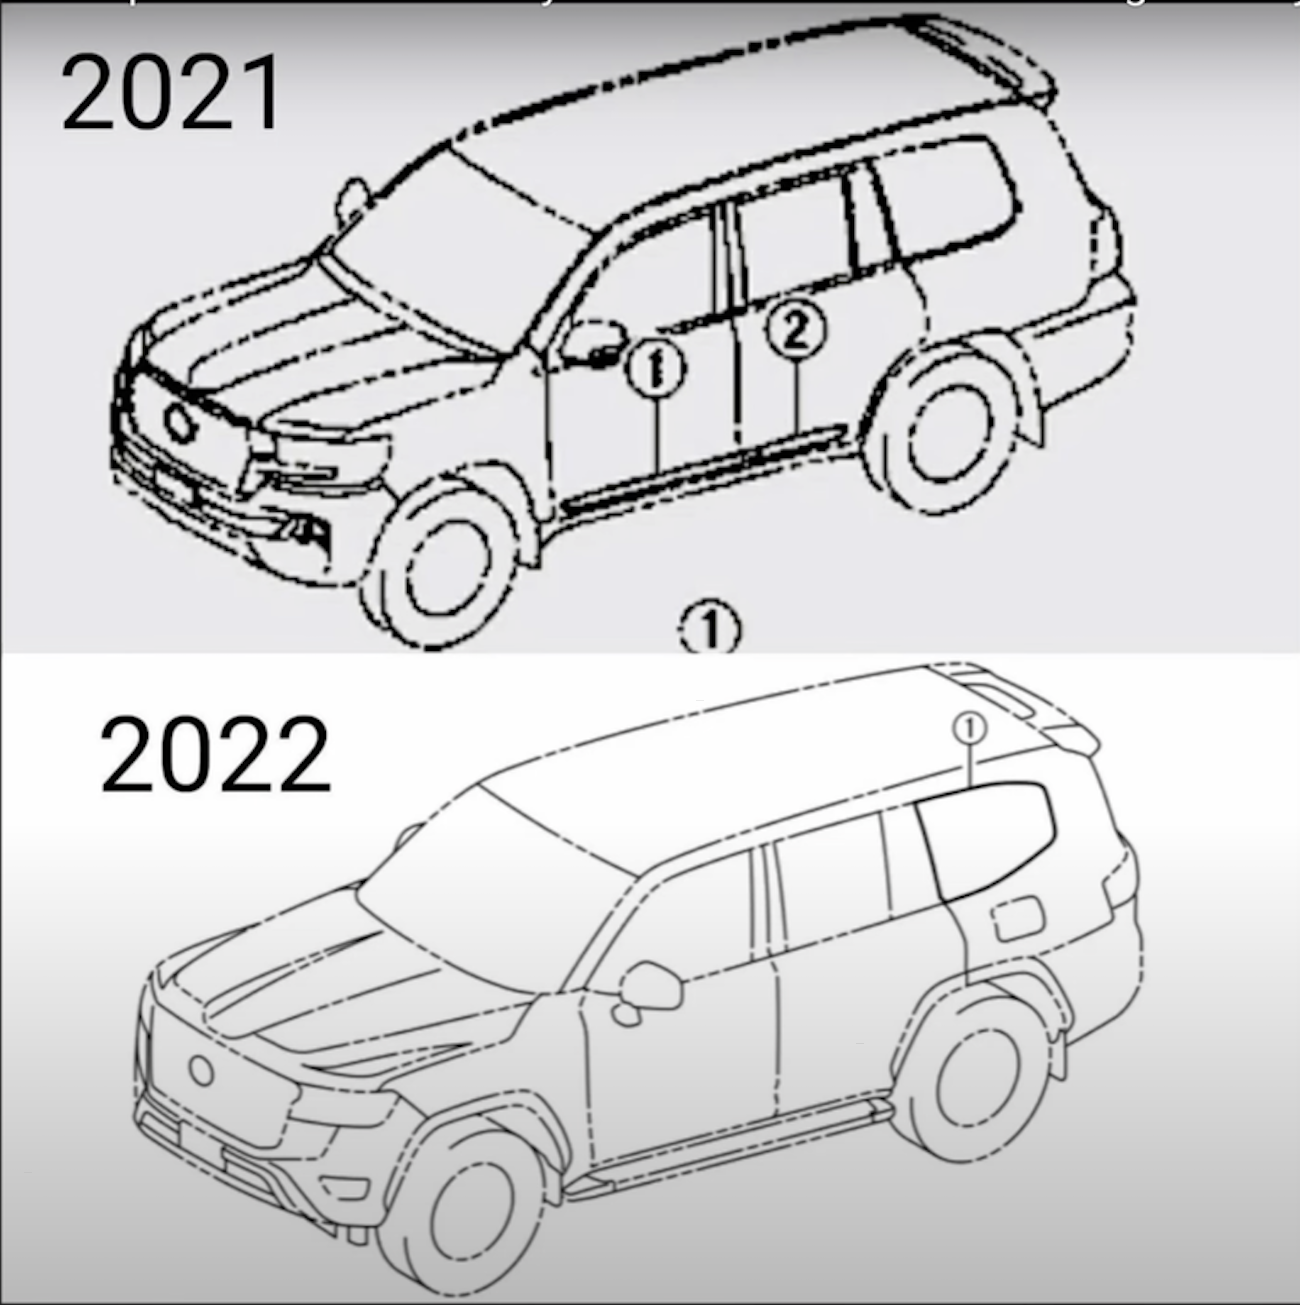 Leaked 2022 Toyota Land Cruiser